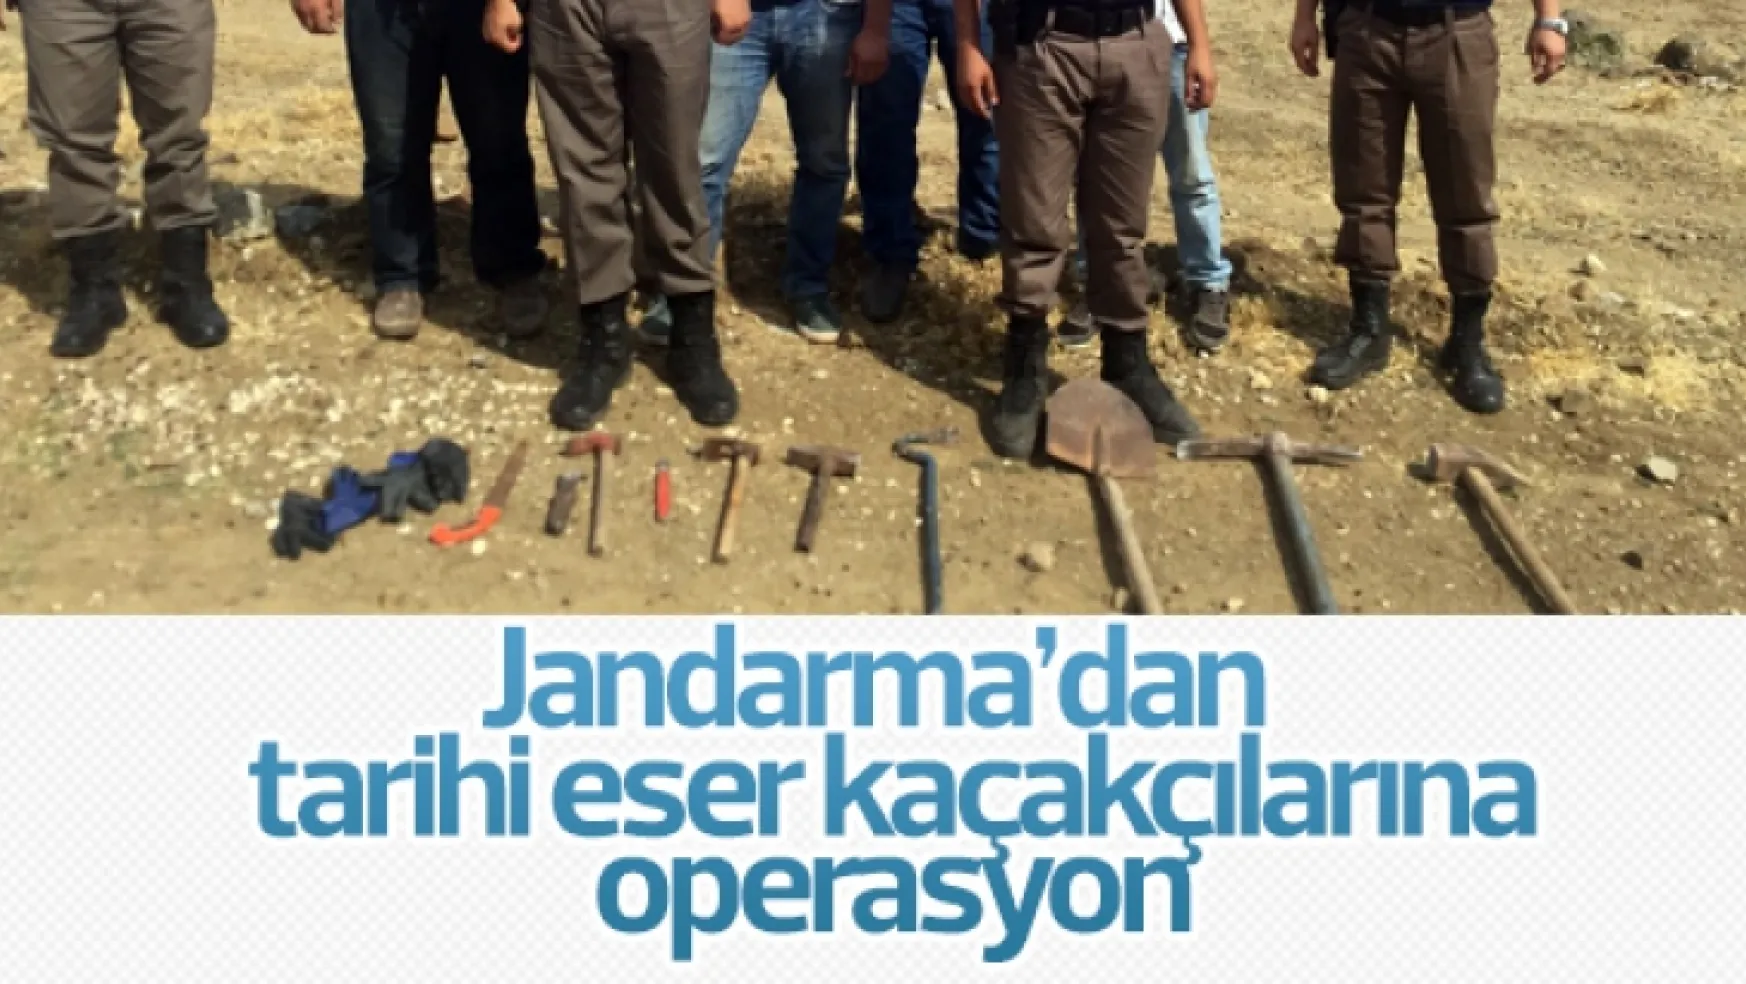 Jandarma tarihi eser kaçakçılarına operasyon yaptı